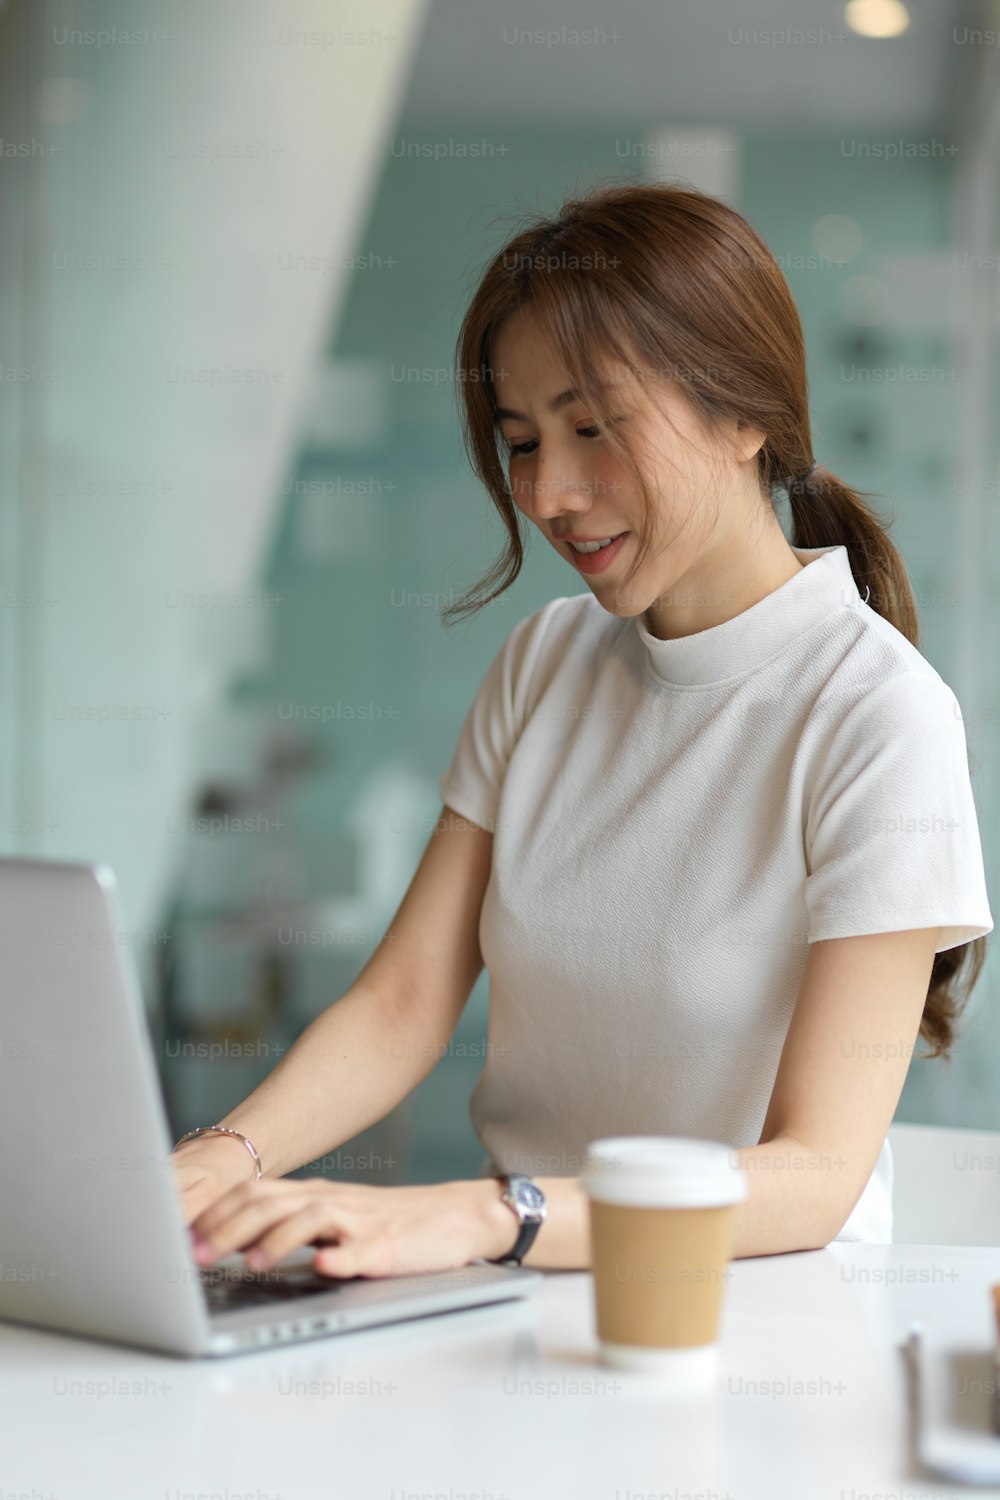 Colpo ritagliato di giovane femmina che utilizza il computer portatile sul tavolo nello spazio di co-working